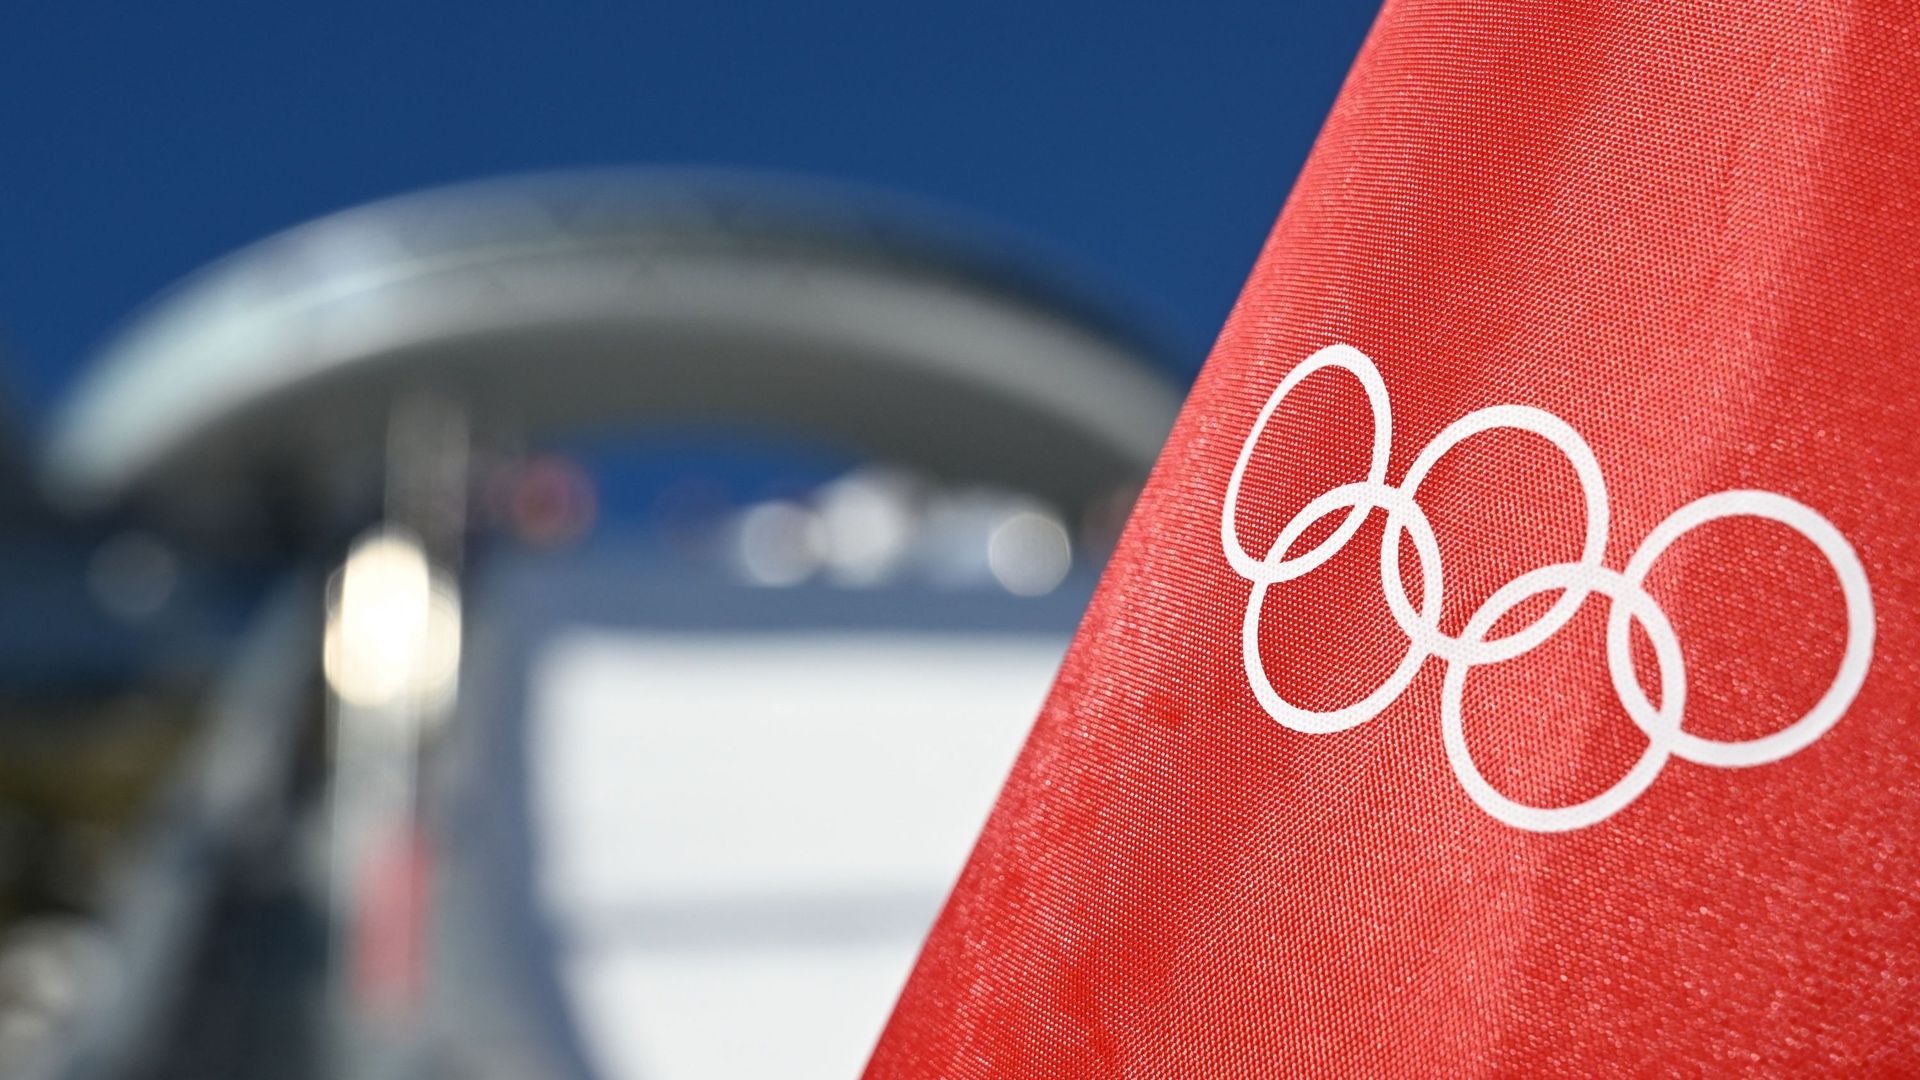 Bannière avec les anneaux olympiques.